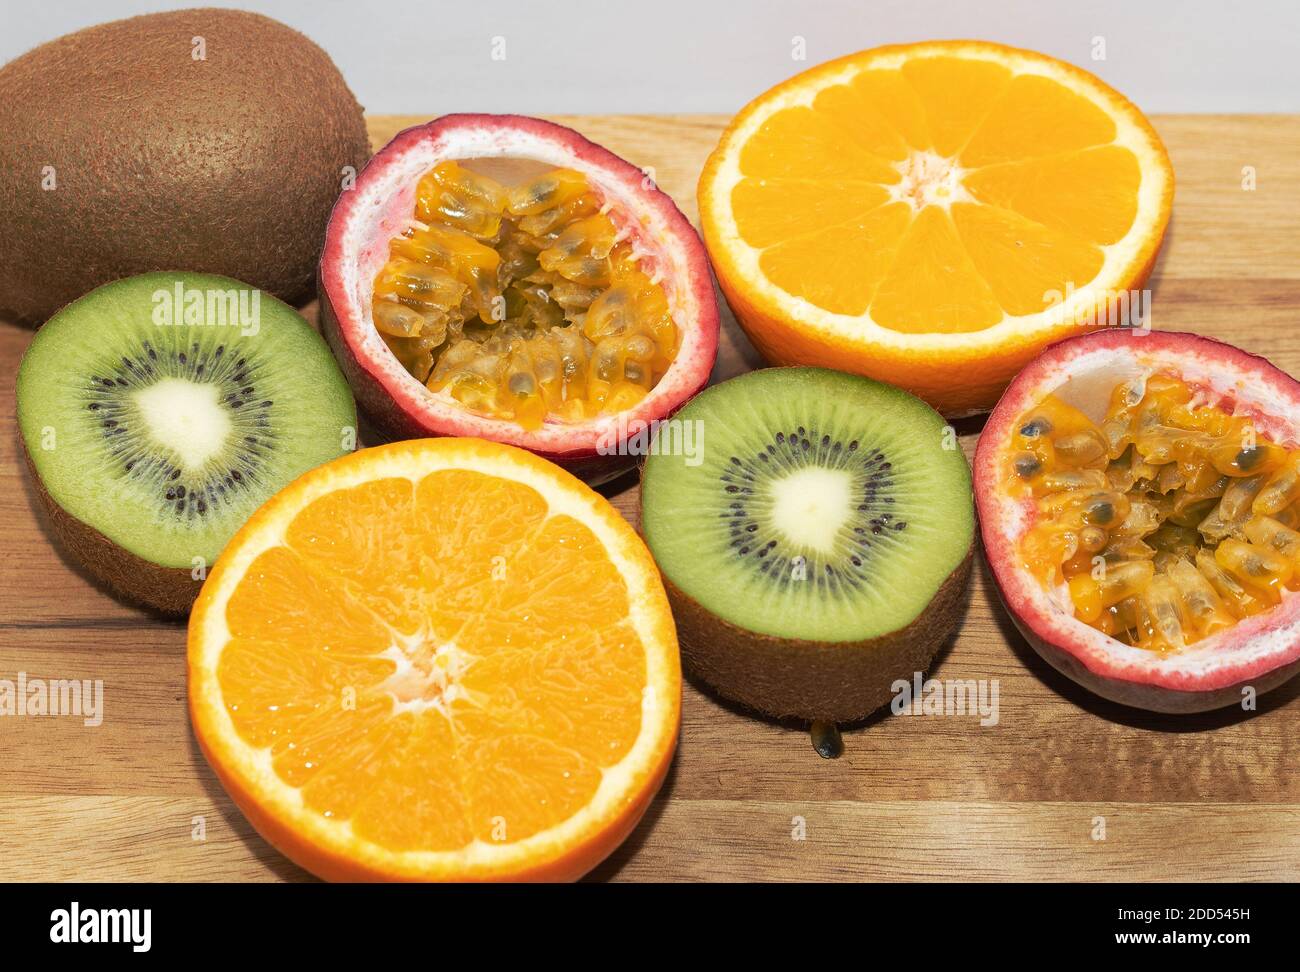 Mixed Fruits On The Wooden Background. Kiwi. Orange. Passion Fruits. Stock Photo